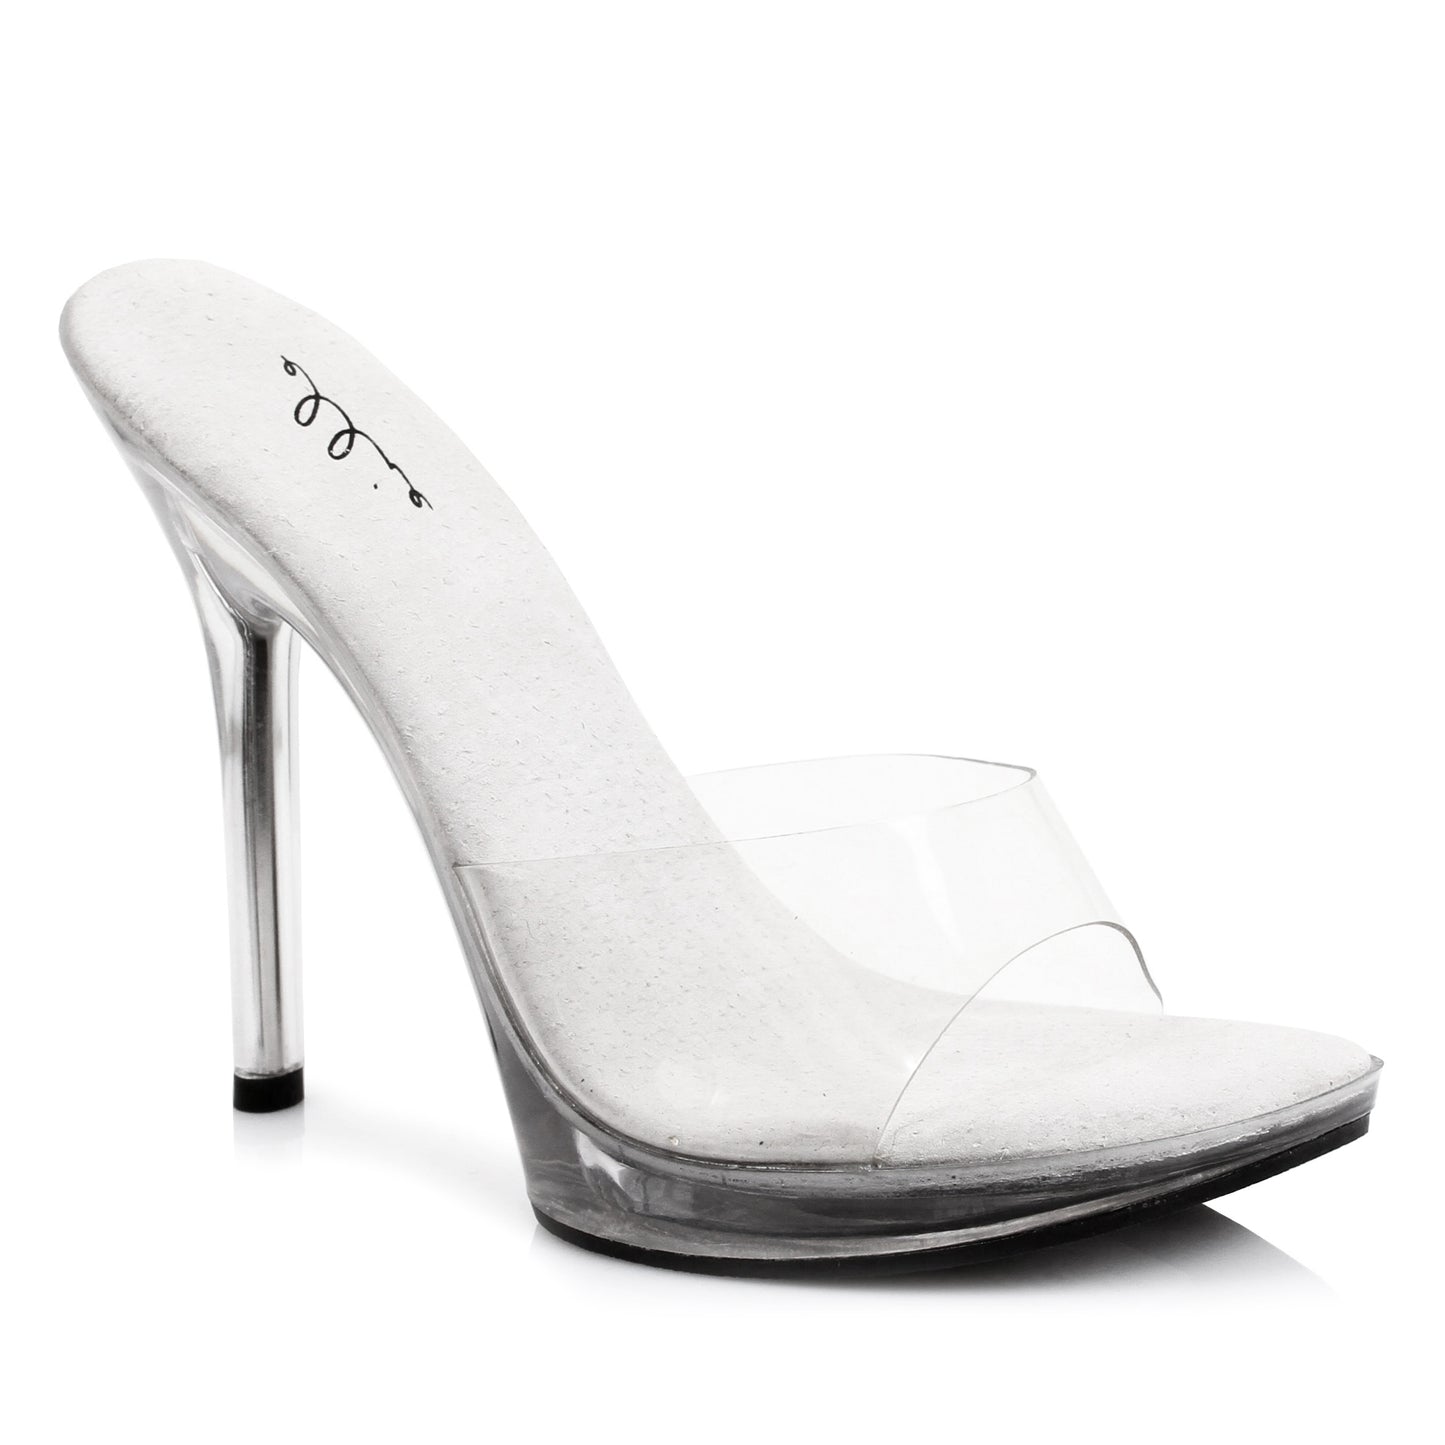 502-VANITY Ellie Shoes 5" Heel Clear Mule. COMPETITIO EXTENDED S 5 INCH HEEL